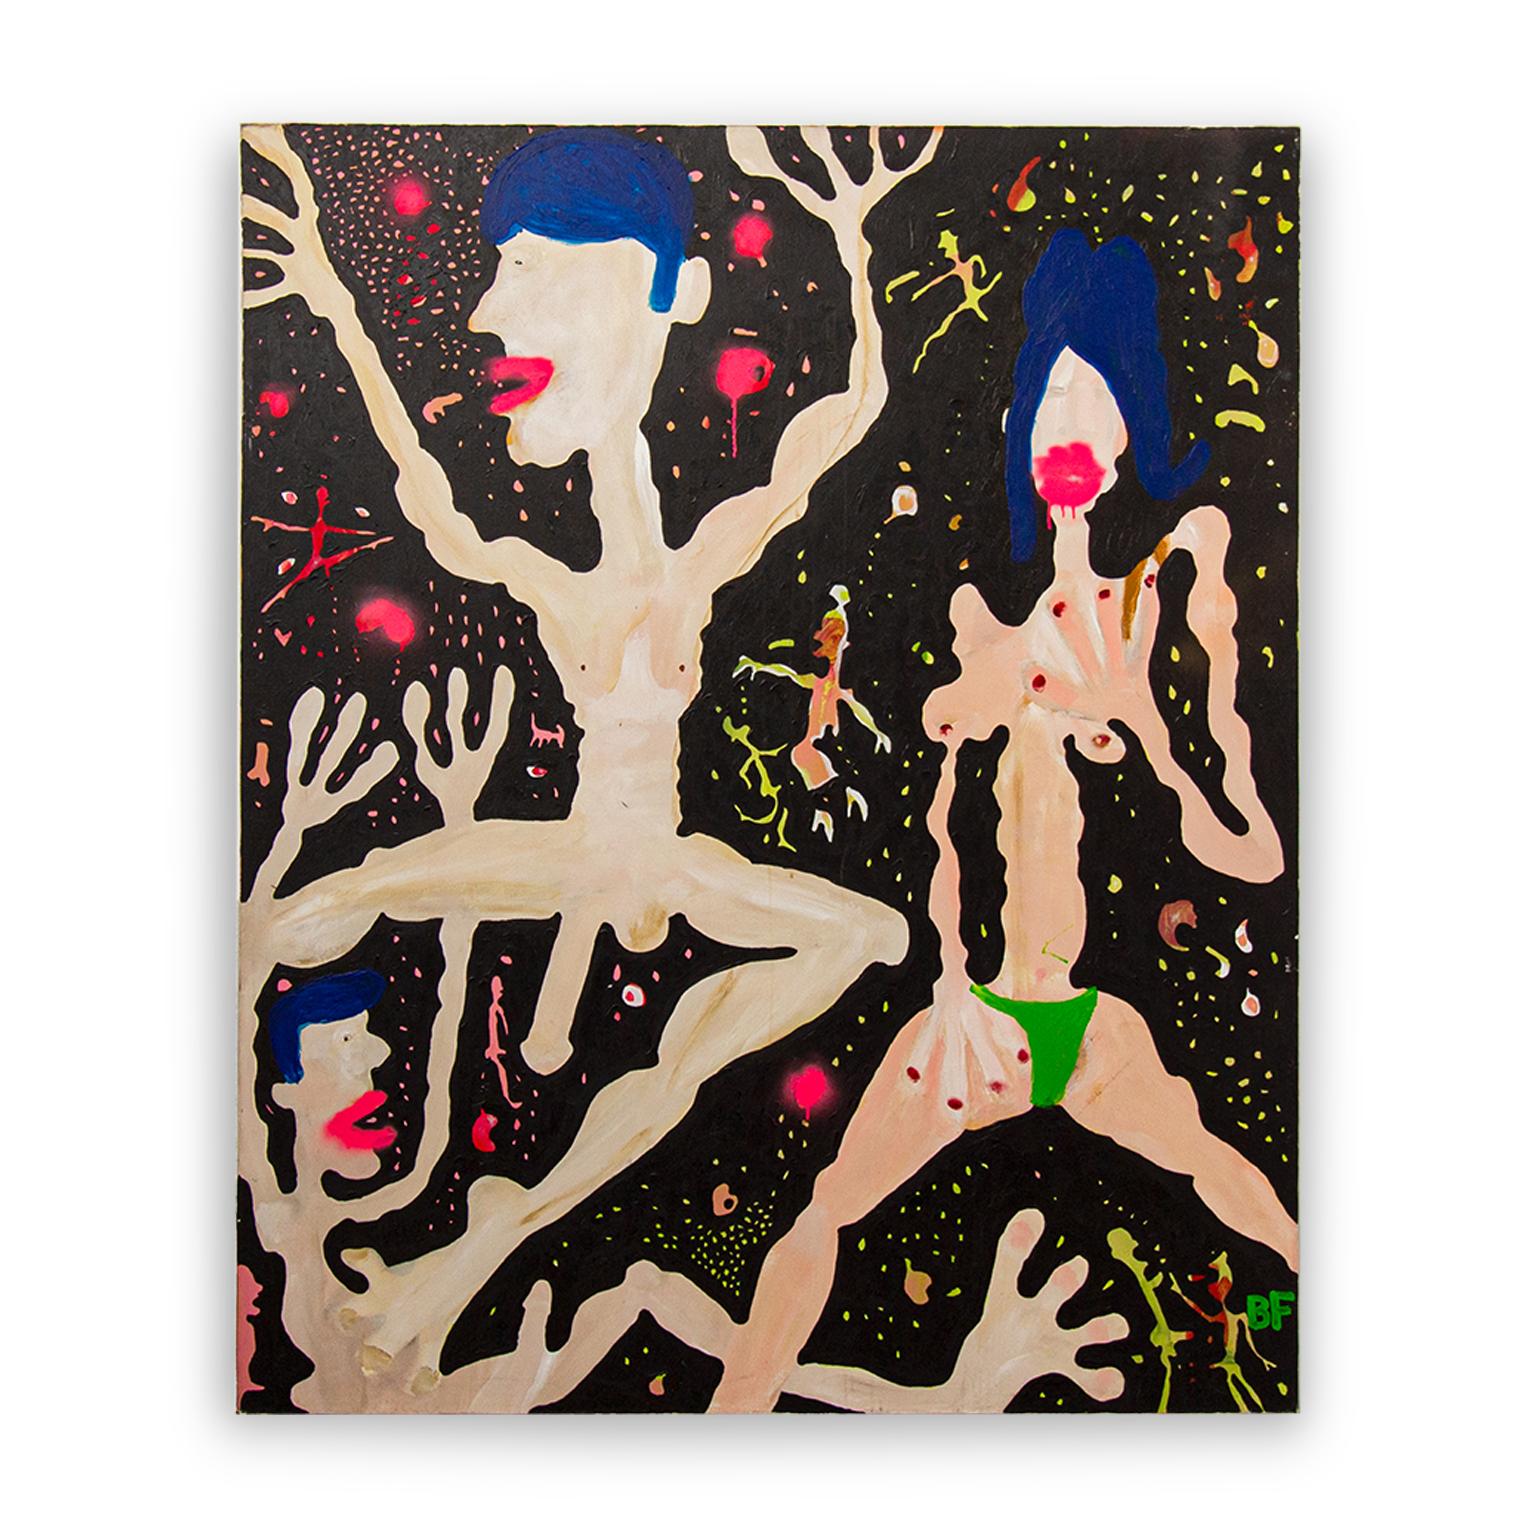 Bikini vert #1

Peinture figurative mixte sur toile de l'artiste Brad Fisher

72 × 60 × 1.5 in

L'expédition n'est pas incluse. Voir nos politiques d'expédition. Veuillez nous contacter pour obtenir un devis d'expédition et des options de